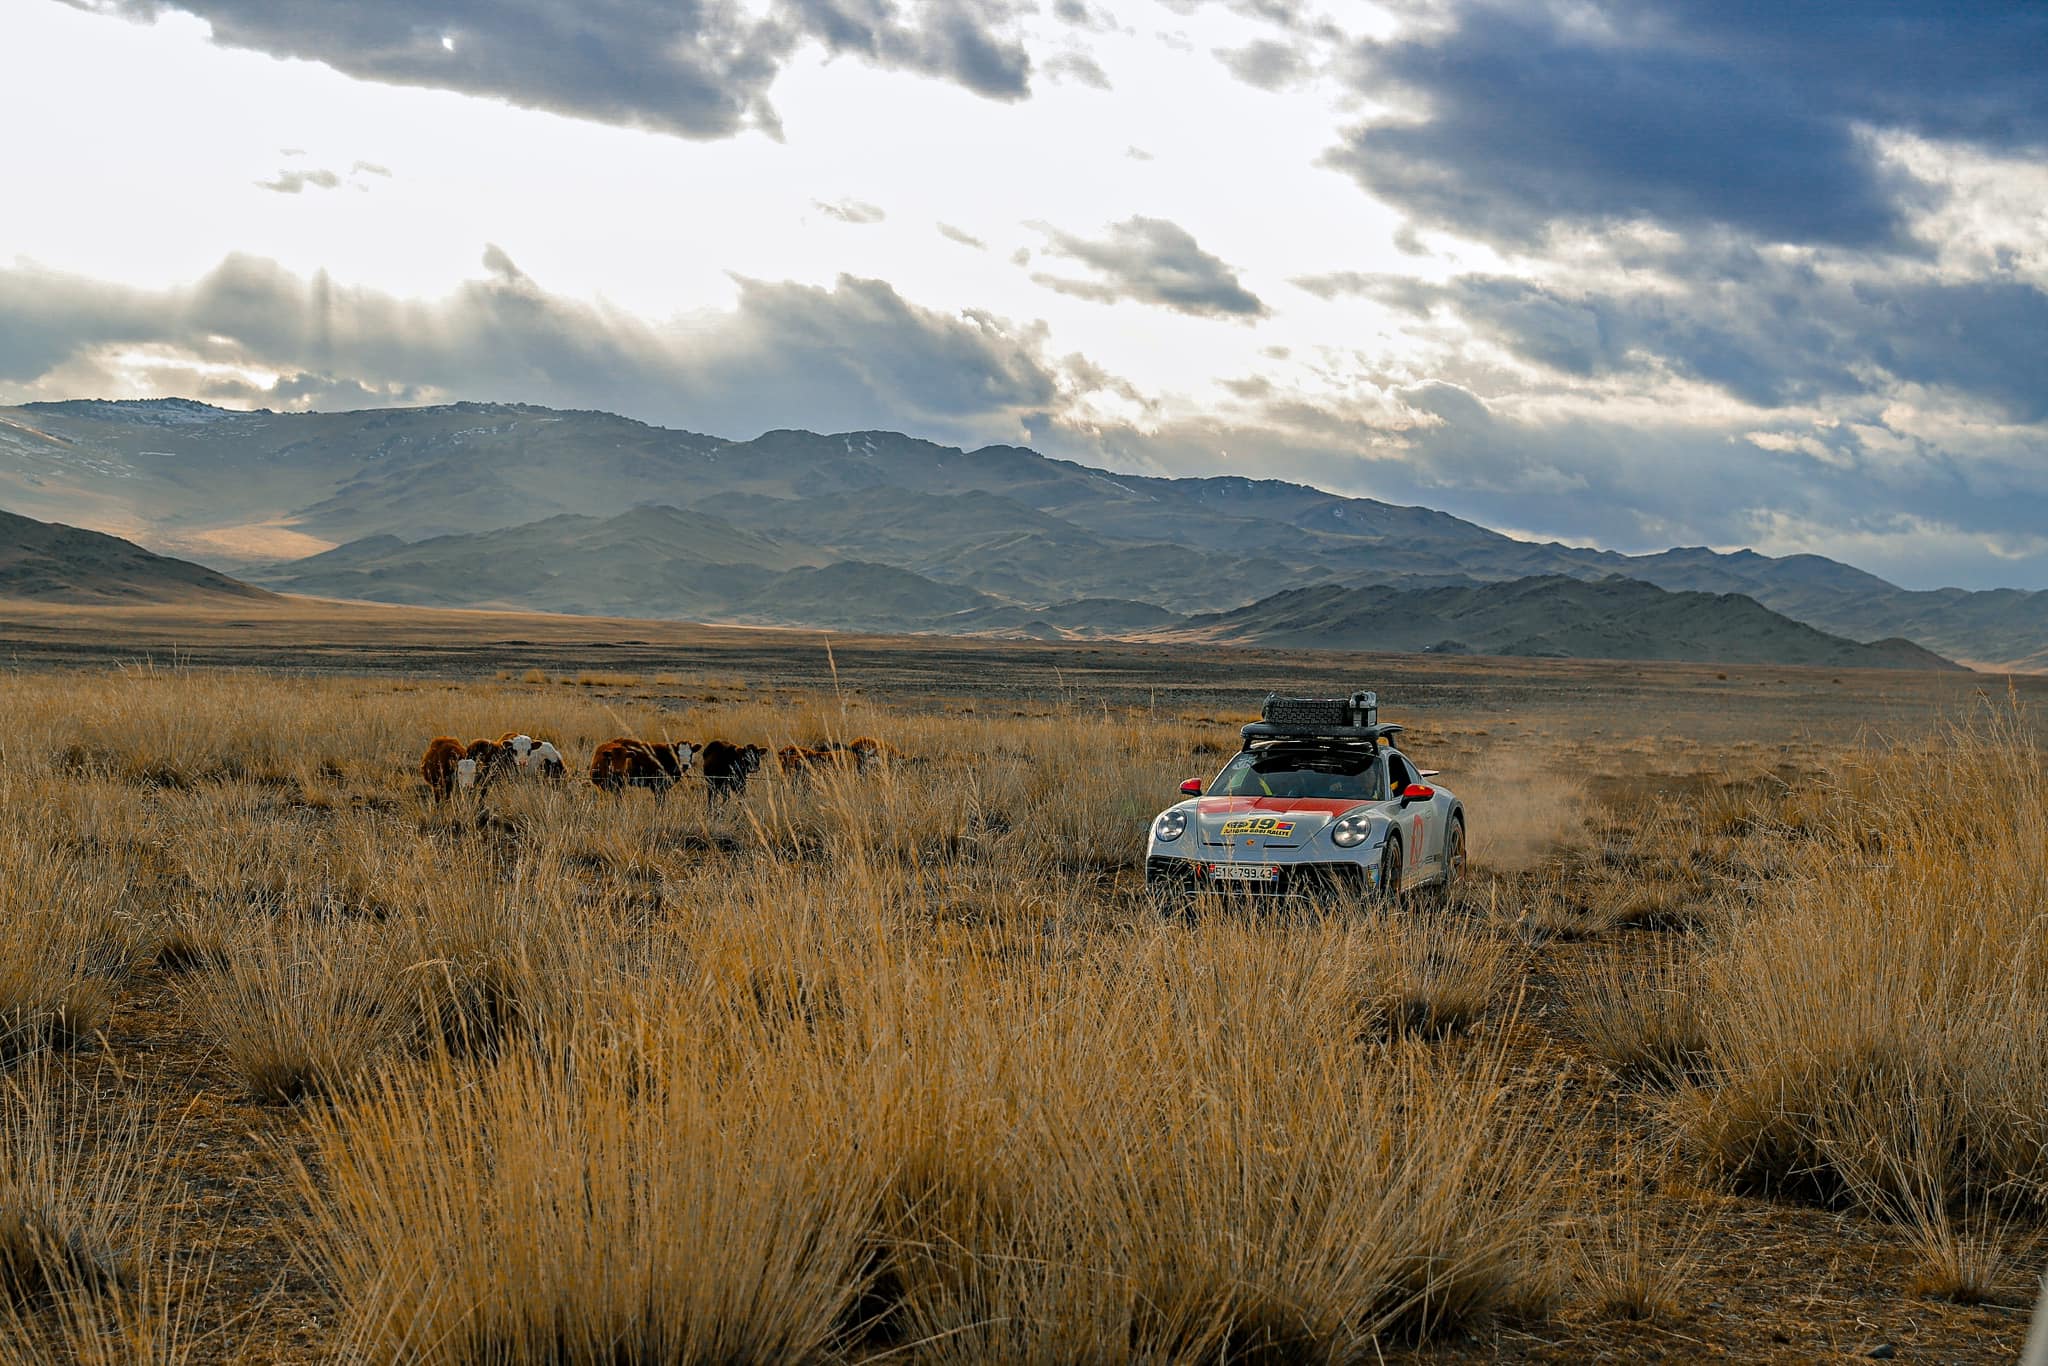 Chủ xe Porsche 911 Dakar: Từ bức ảnh trên Facebook tới quyết định mua xe và chuyến phượt hơn 33.000km từ Việt Nam tới Mông Cổ - Ảnh 3.